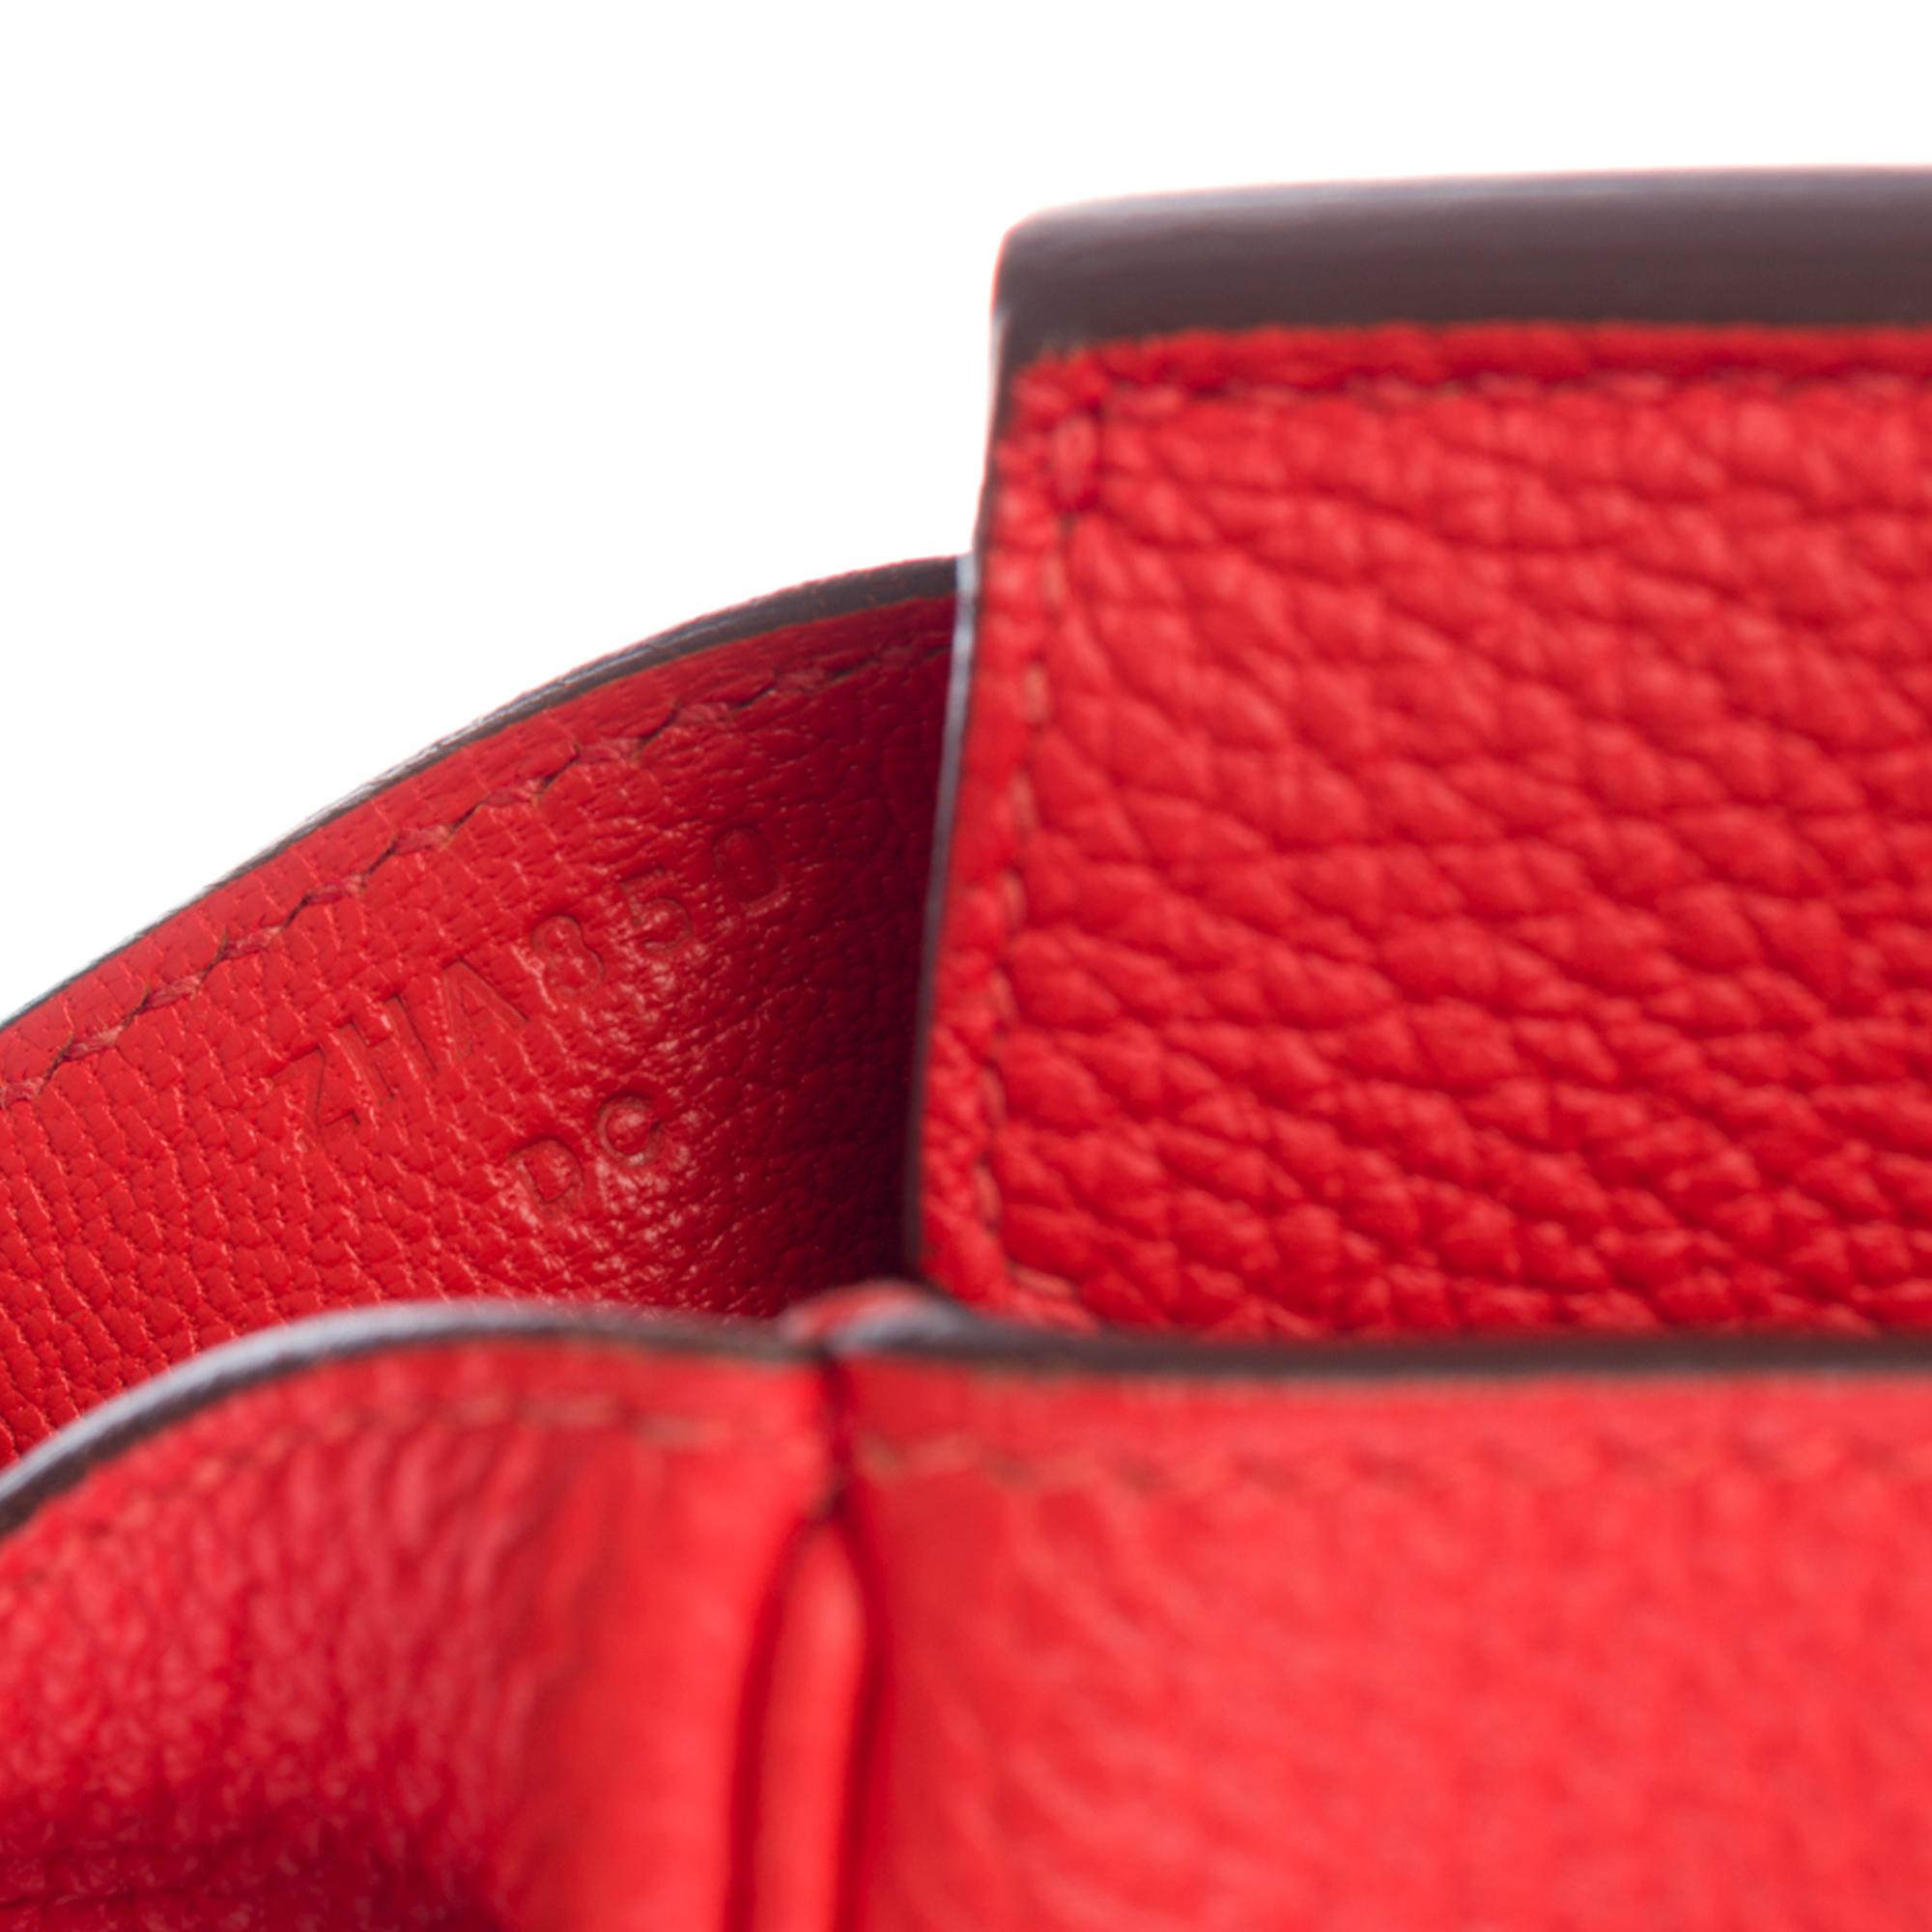 Stunning Hermès Birkin 30 handbag in Rouge Capucine Togo leather, GHW 1